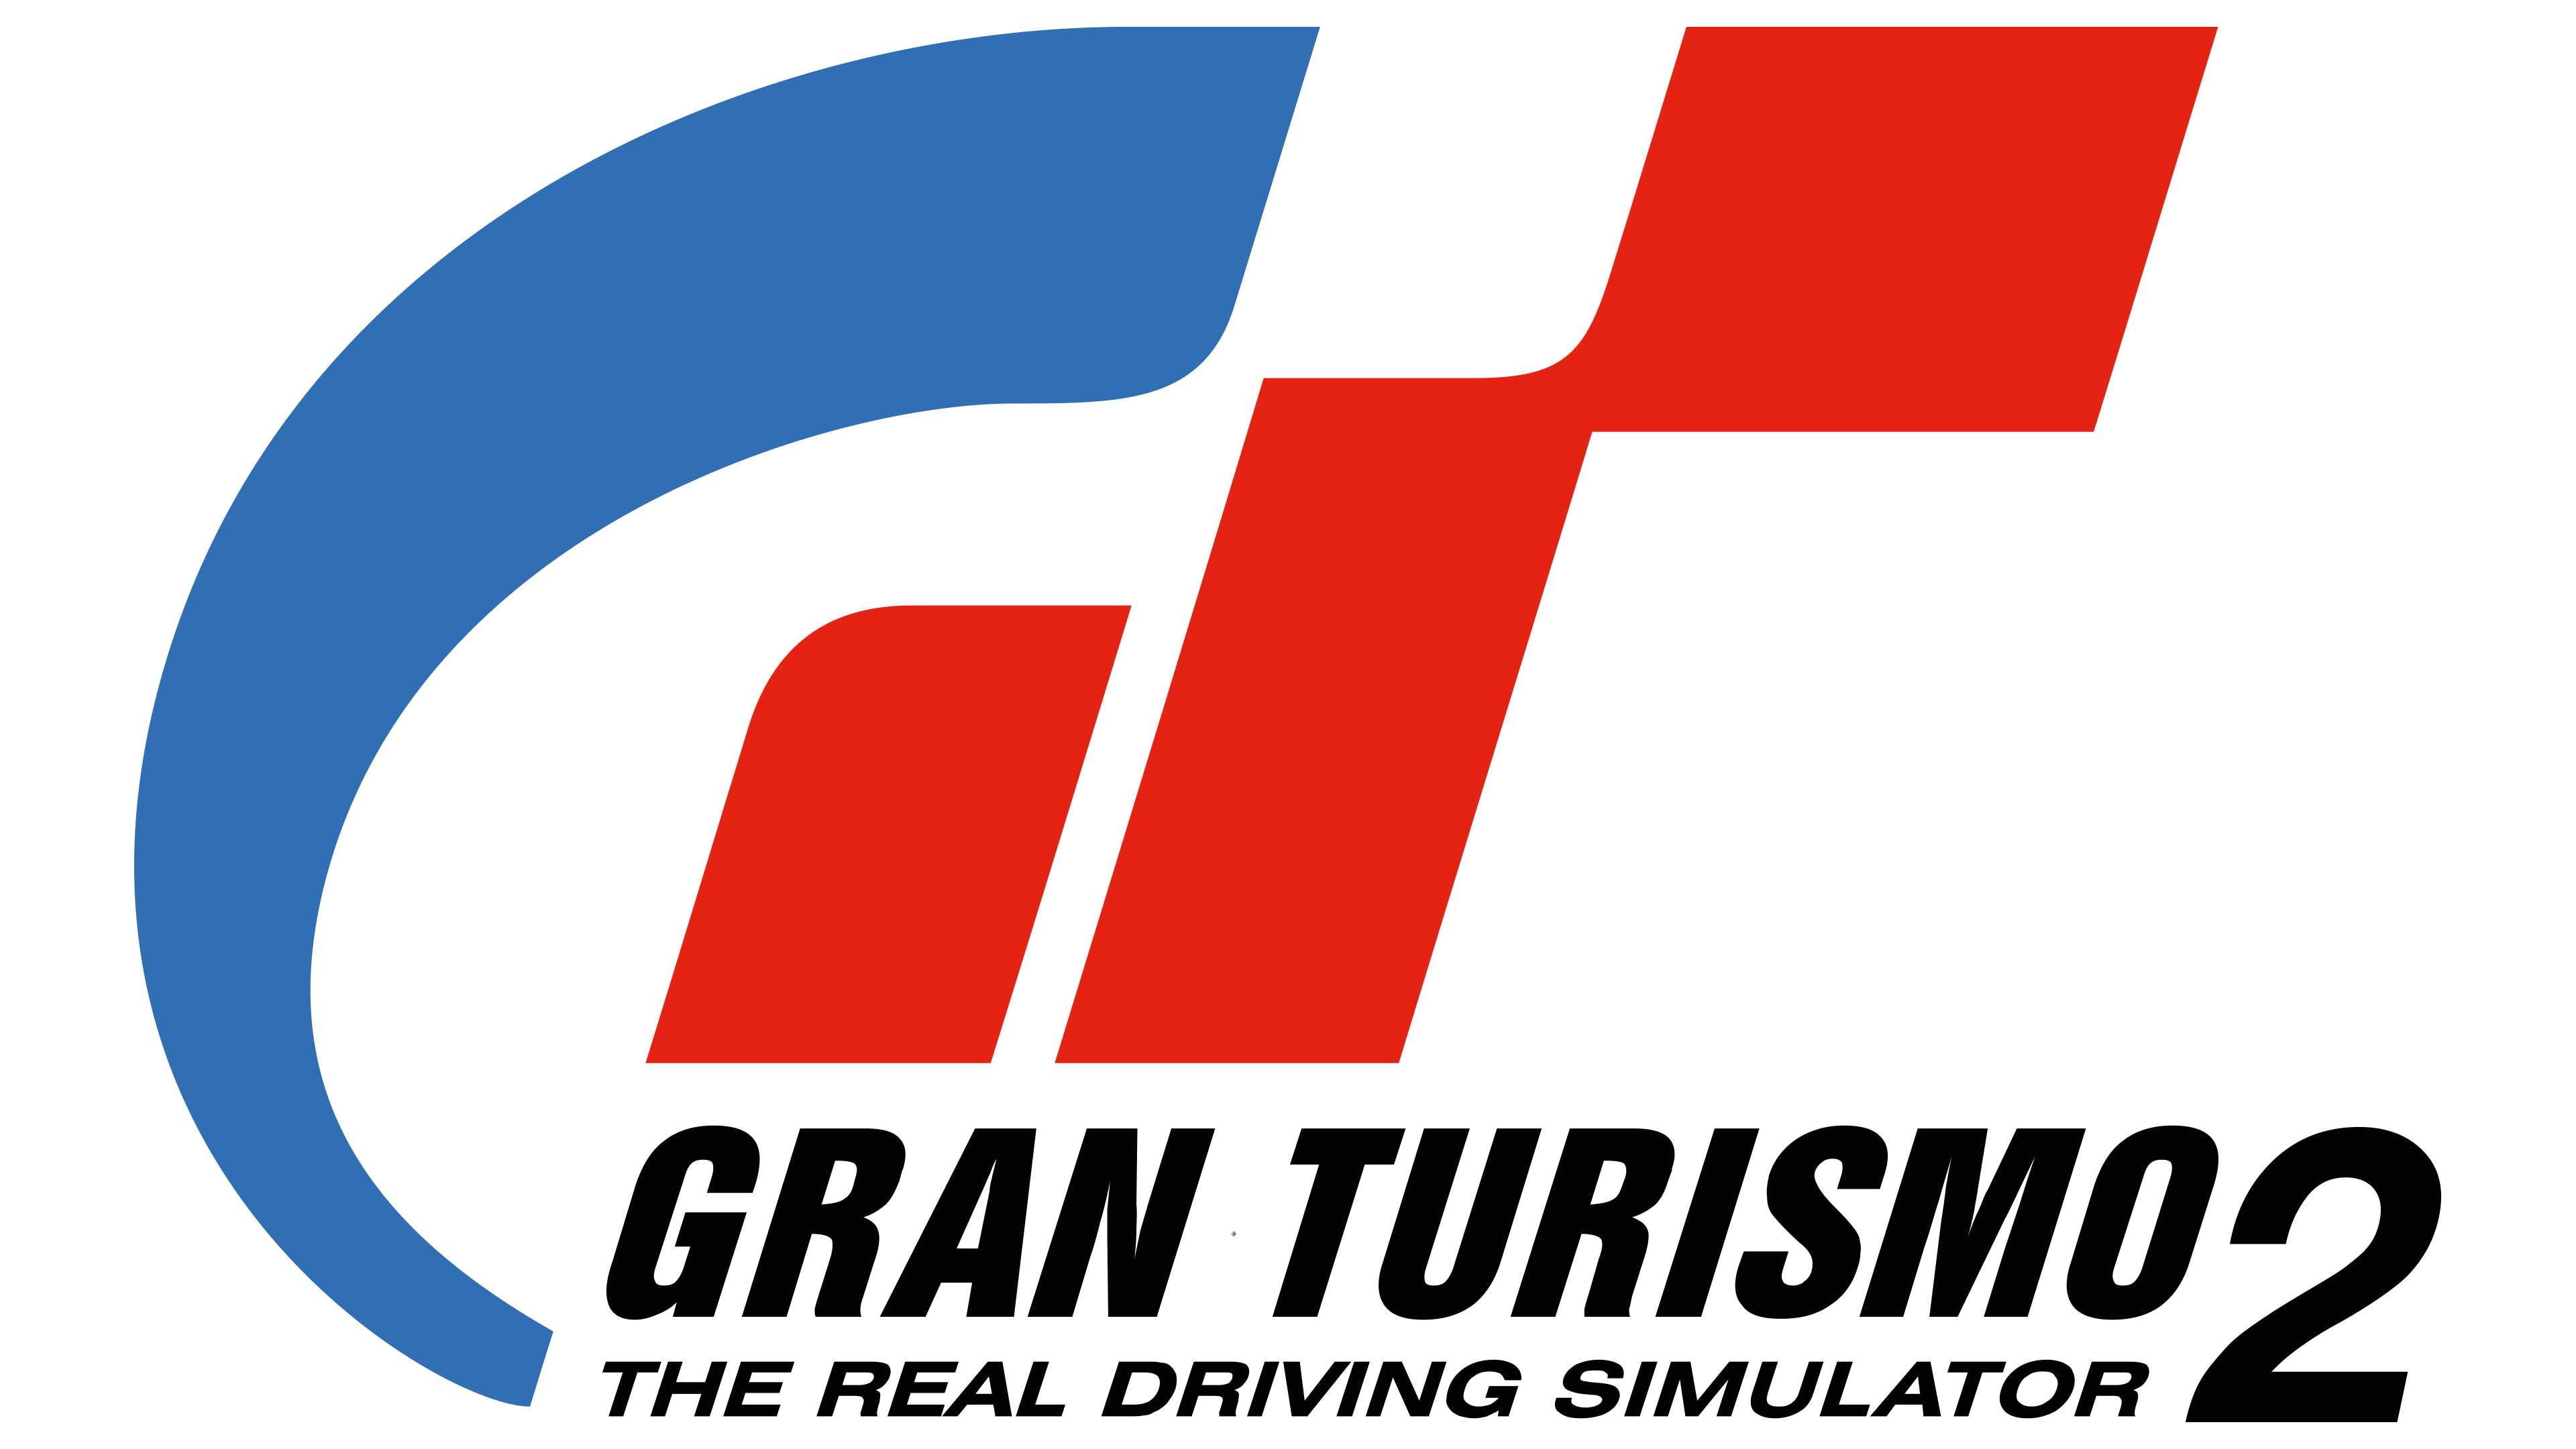 Гран Туризмо 2. Логотип Gran Turismo 4. Gran Turismo 3 a-spec logo. Логотип Gran Turismo Sport.